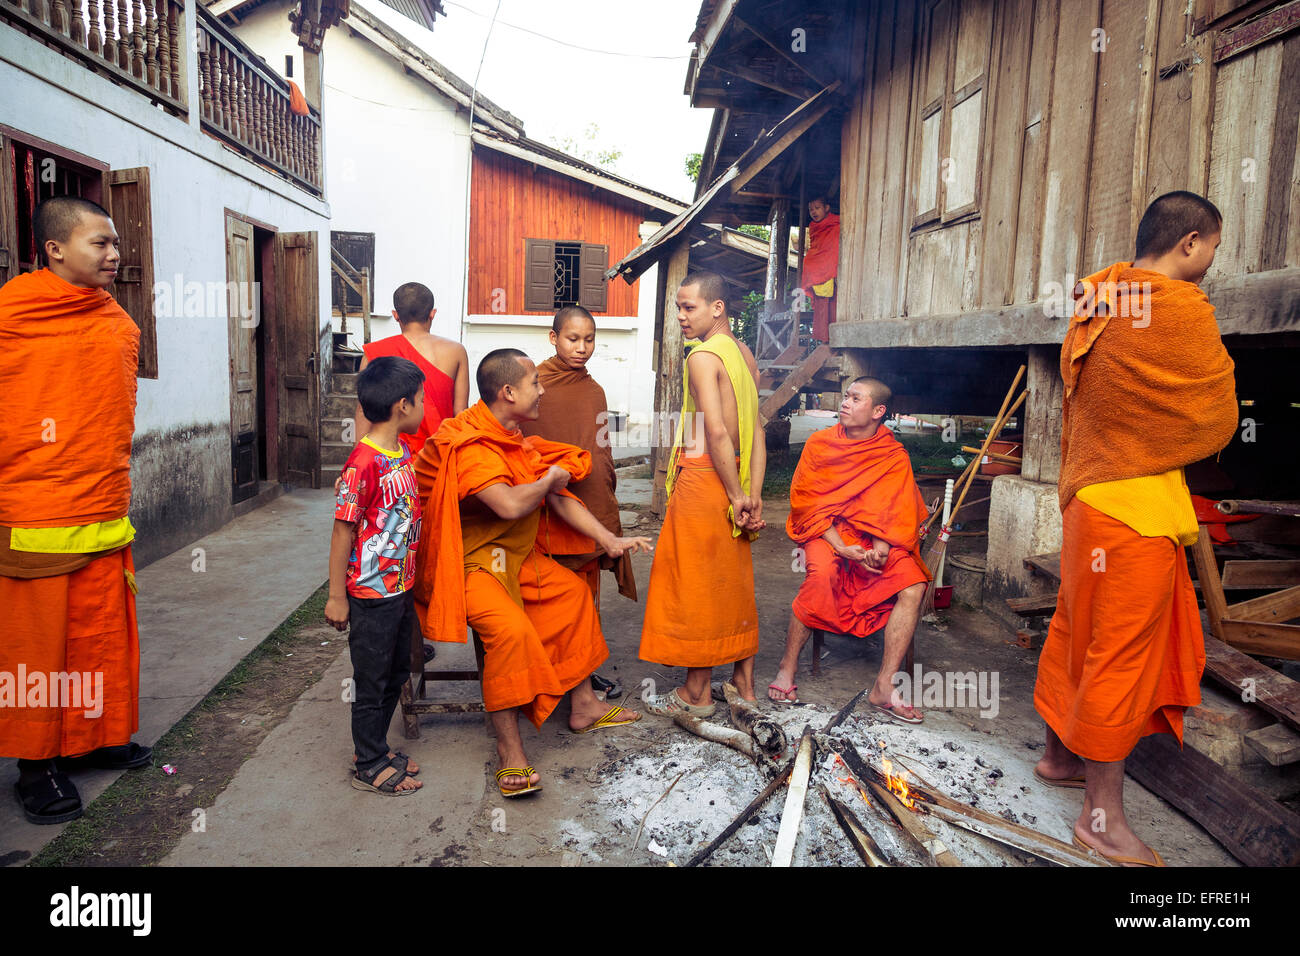 Los jóvenes monjes budistas, en Luang Prabang, Laos. Foto de stock